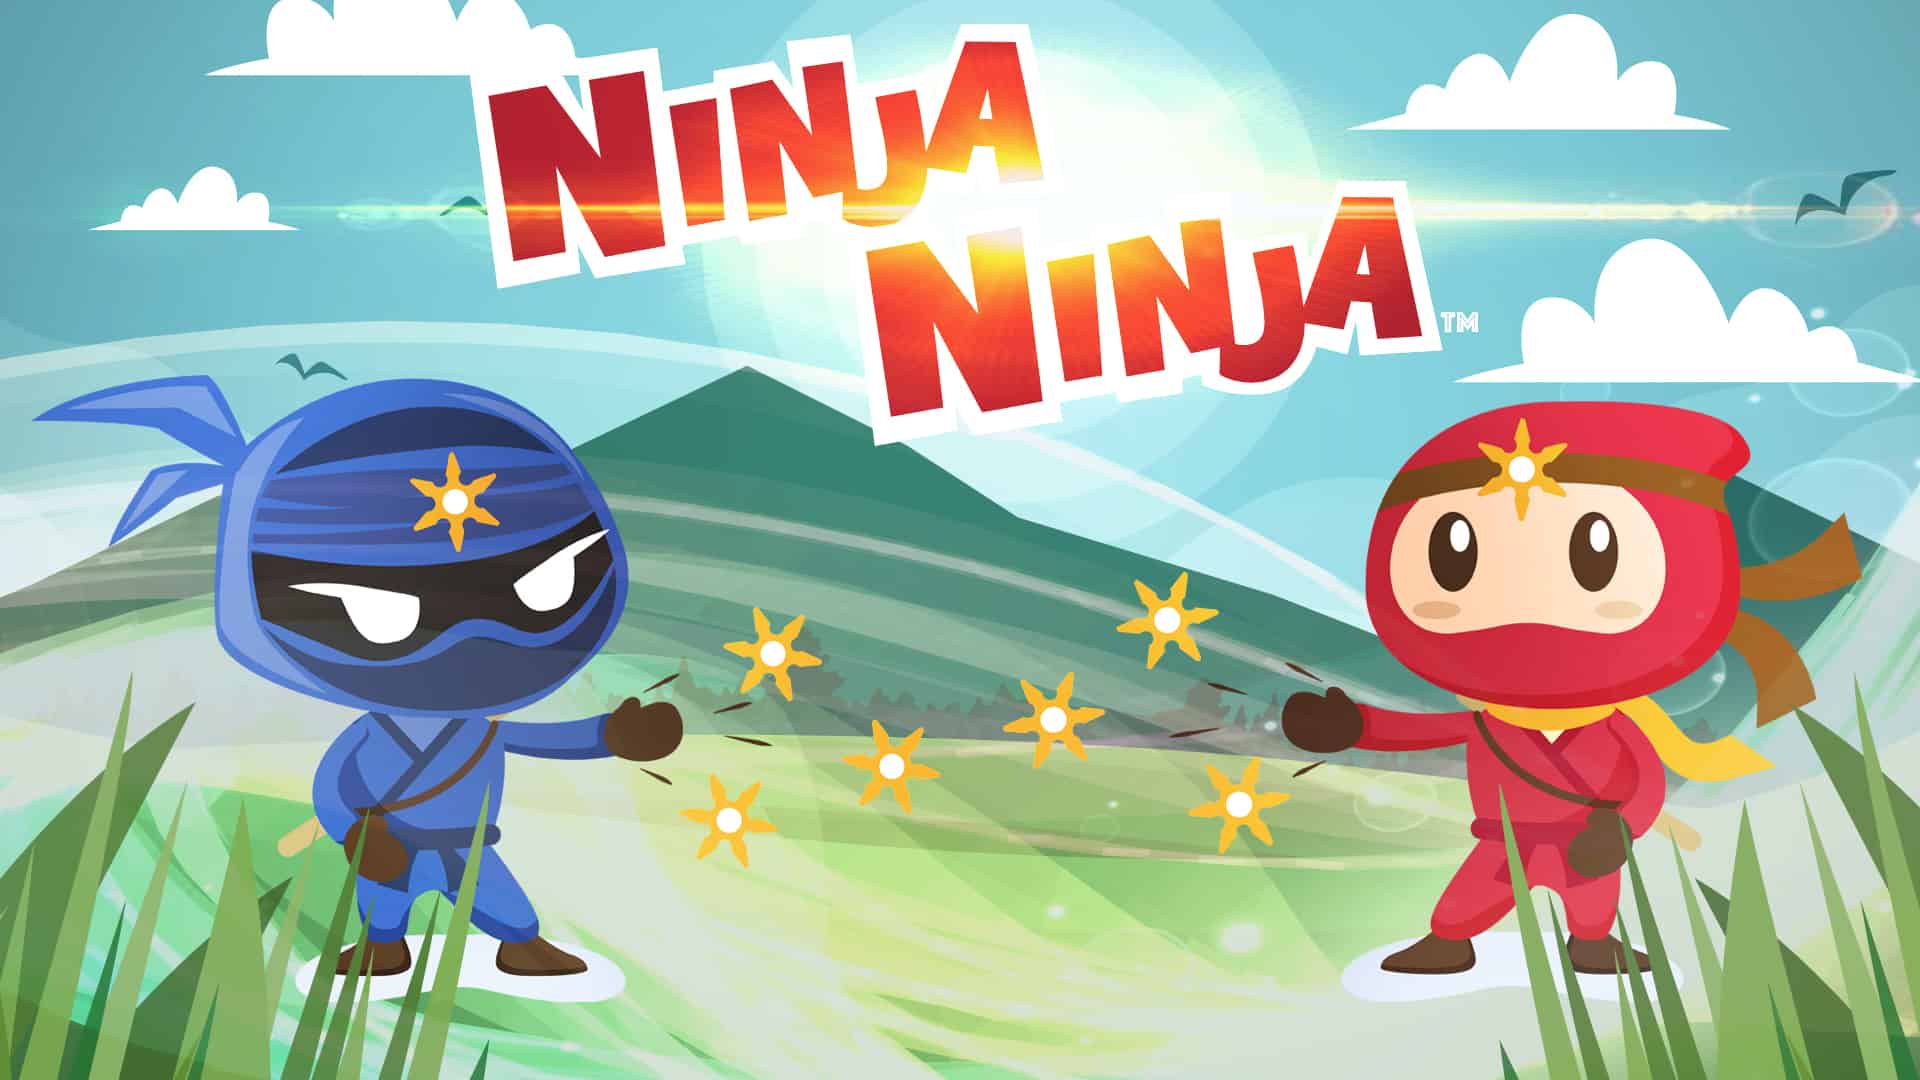 ninja ninja kickstarter game